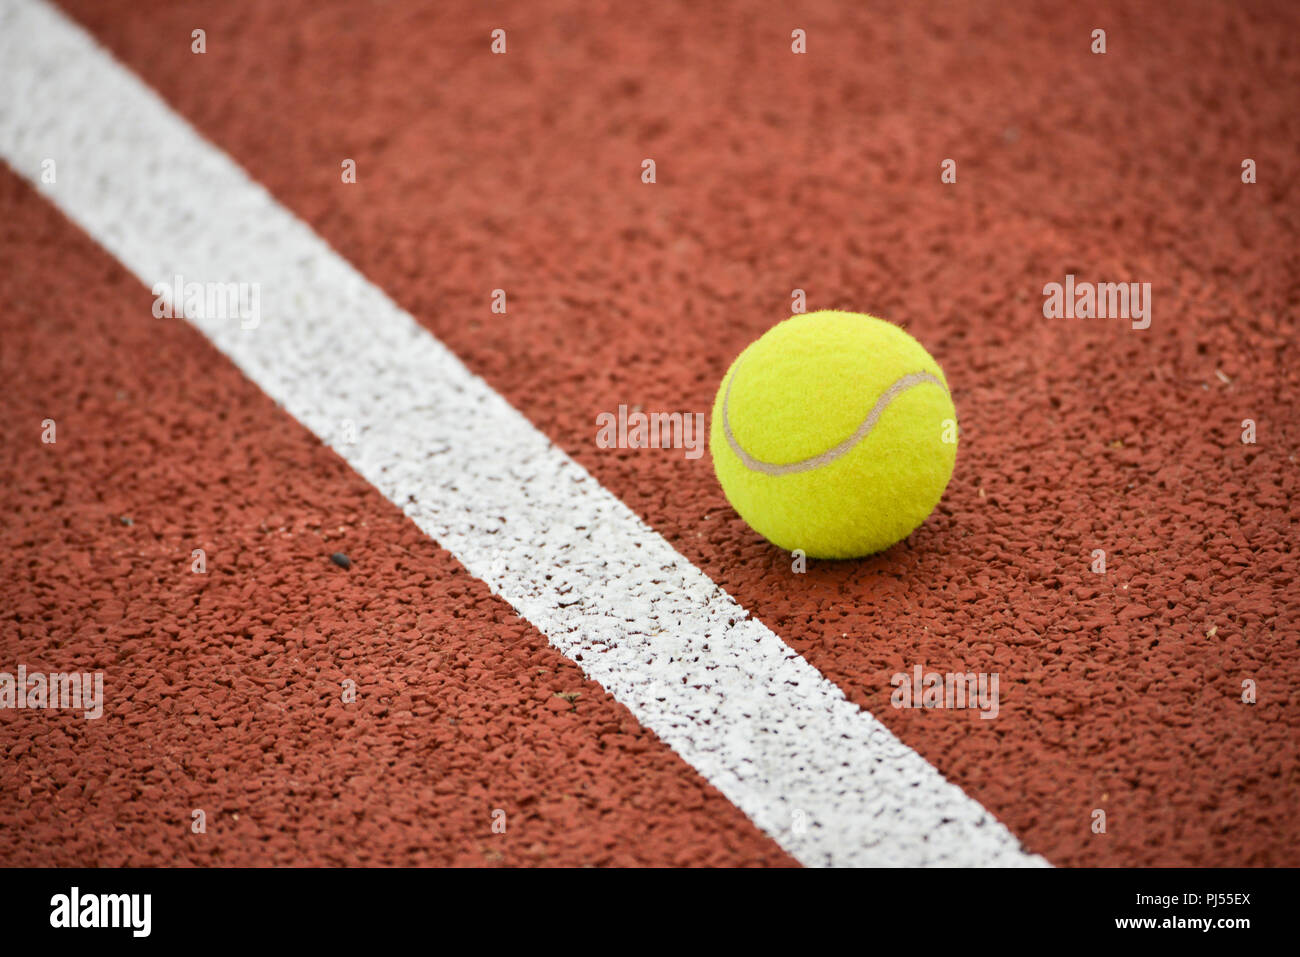 Pista de tenis: bola amarilla y línea blanca sobre un fondo ocre, similar a la arcilla Foto de stock